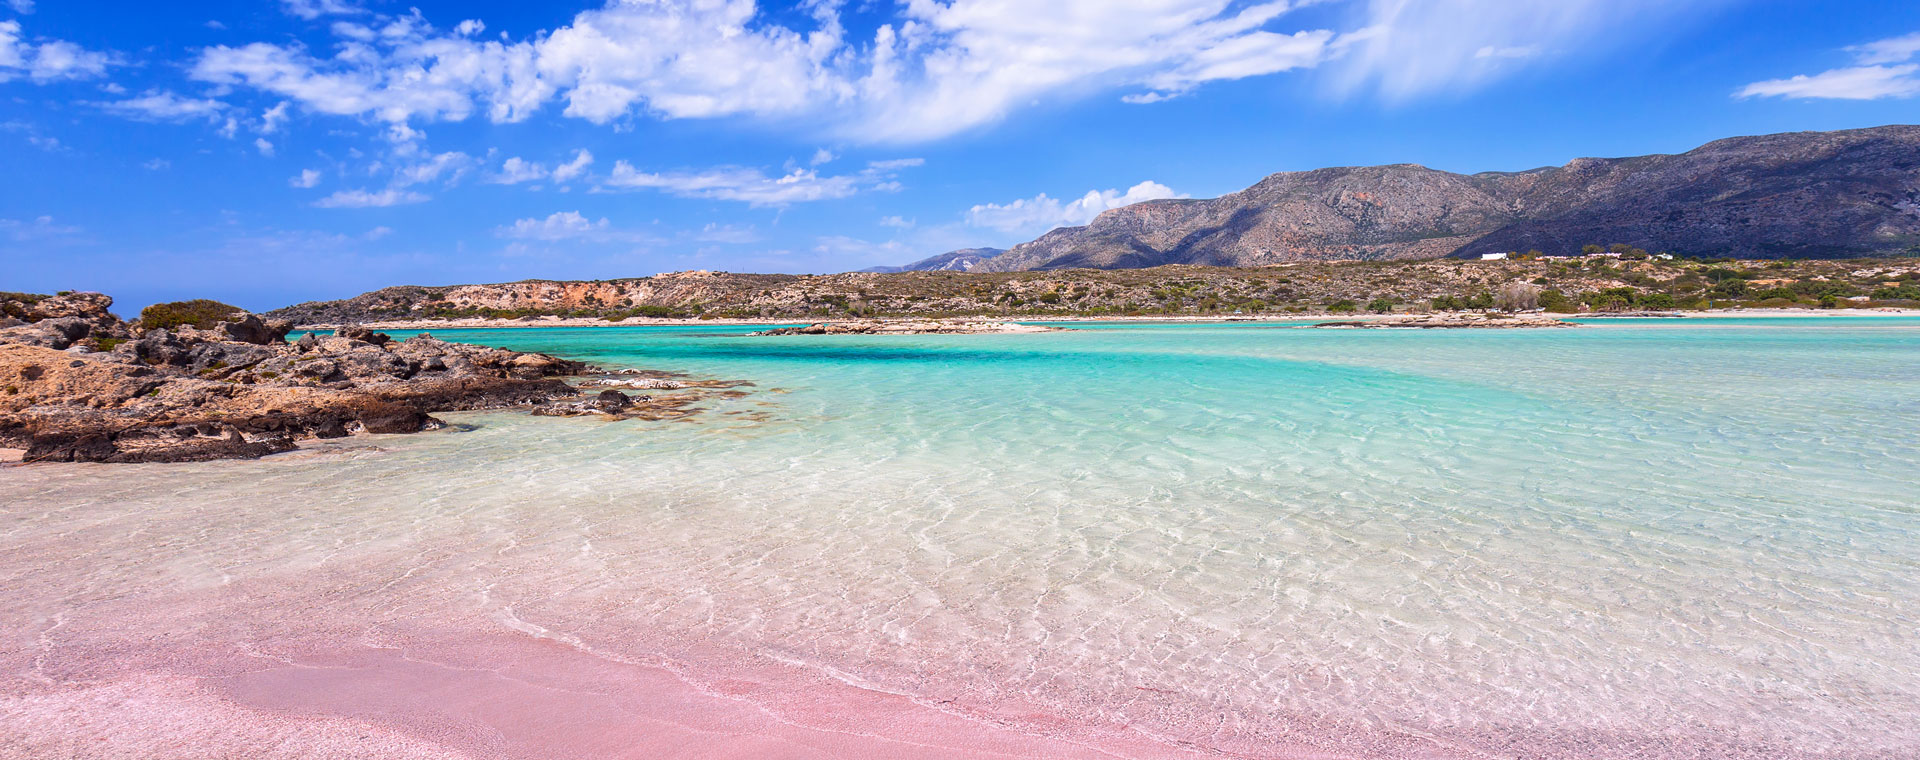 Plage de sable rose d'Elafonissi en Crète